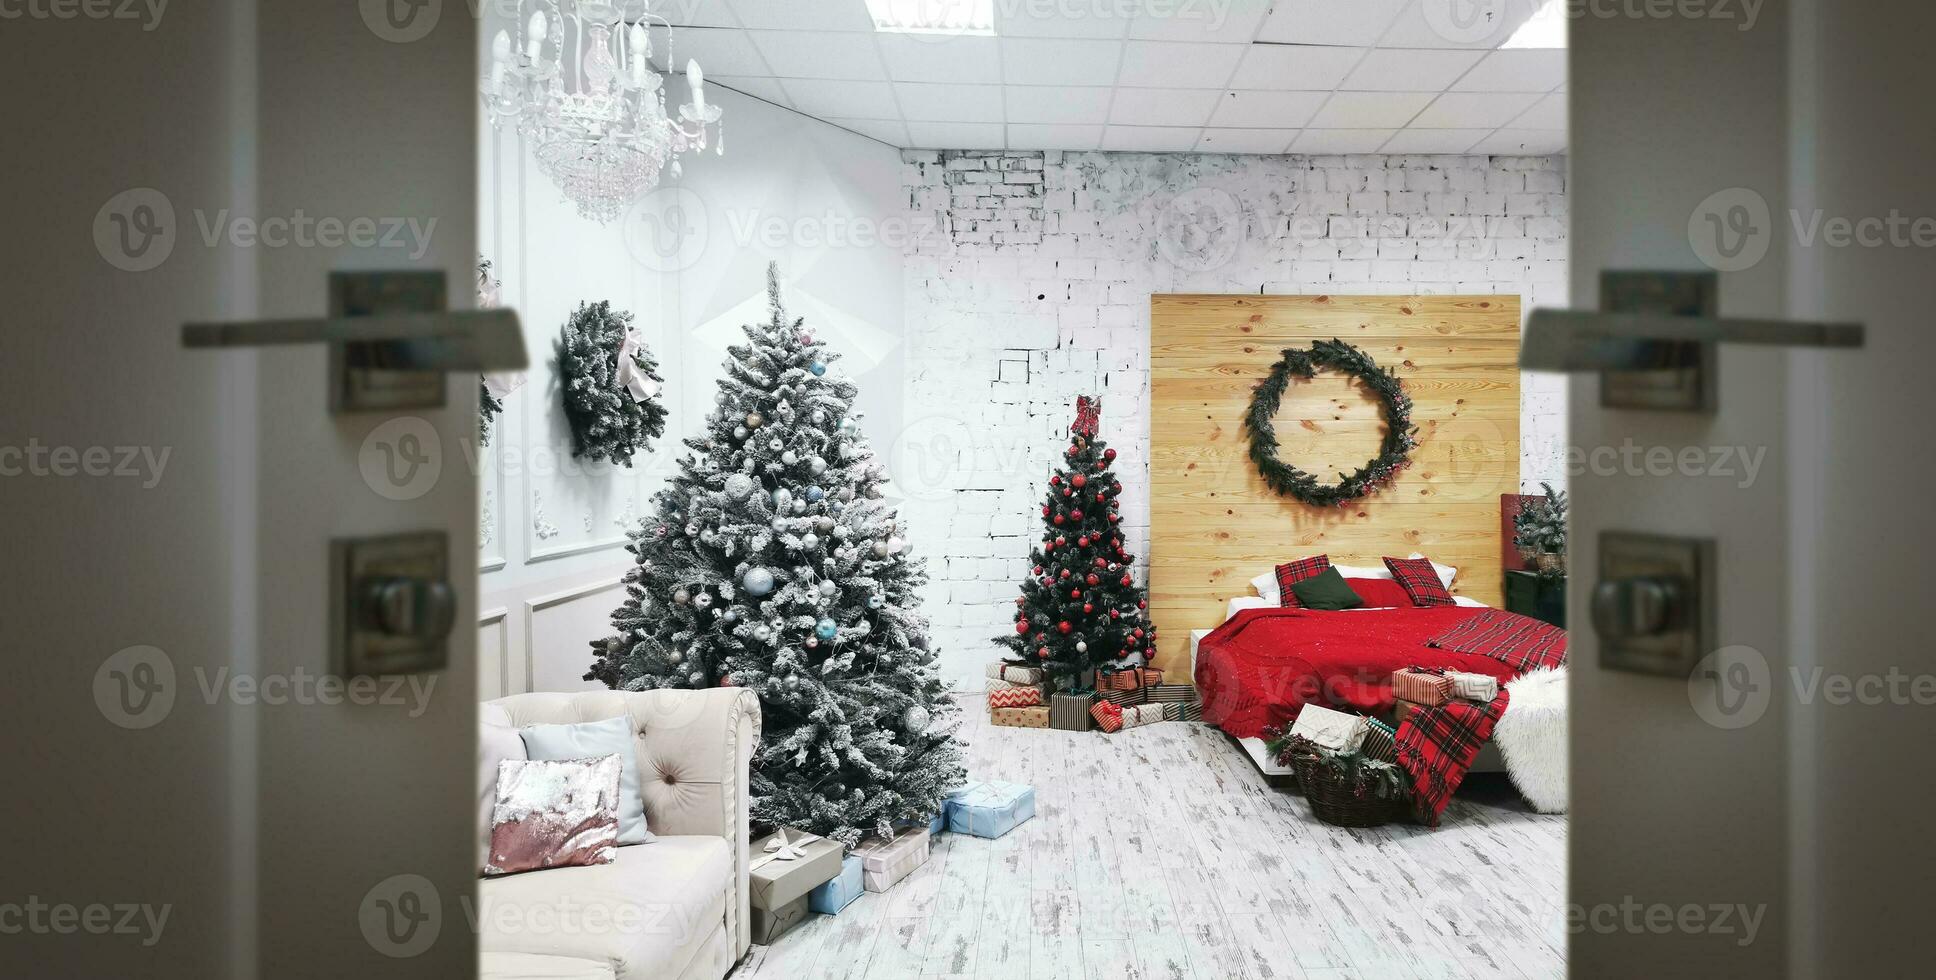 jul interiör med en jul träd öppen spis och öppen dörr foto